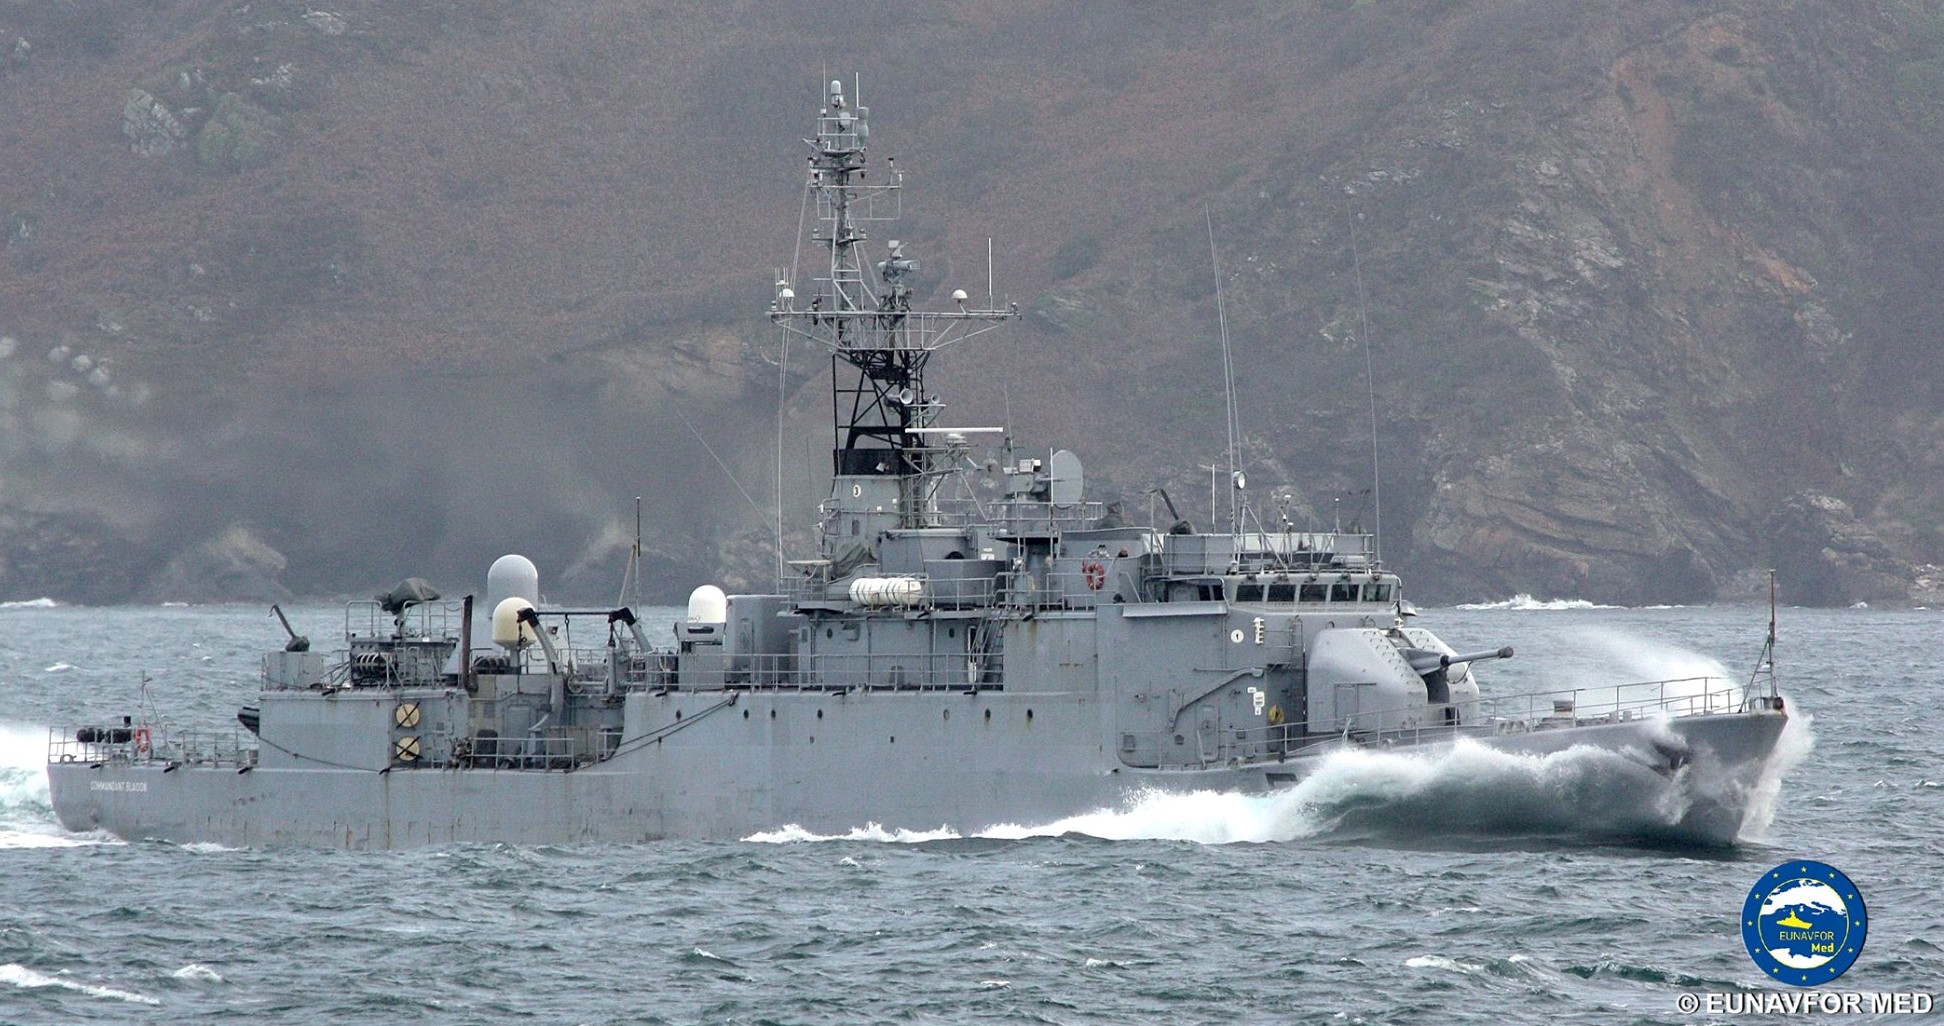 f-793 fs commandant blaison d'estienne d'orves class corvette type a69 aviso french navy marine nationale 10